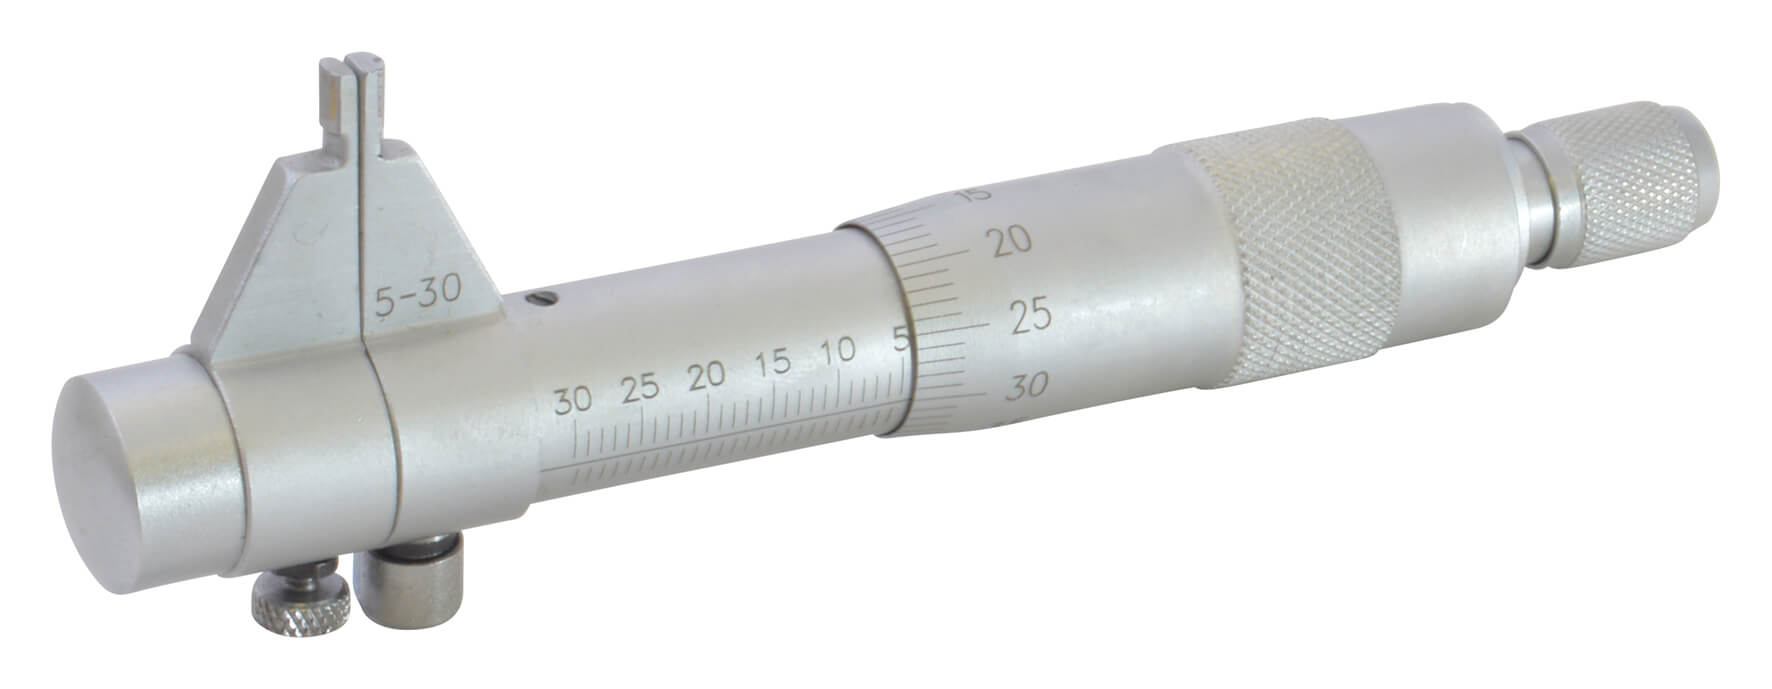 Diatec Inside Micrometer 5-30mm